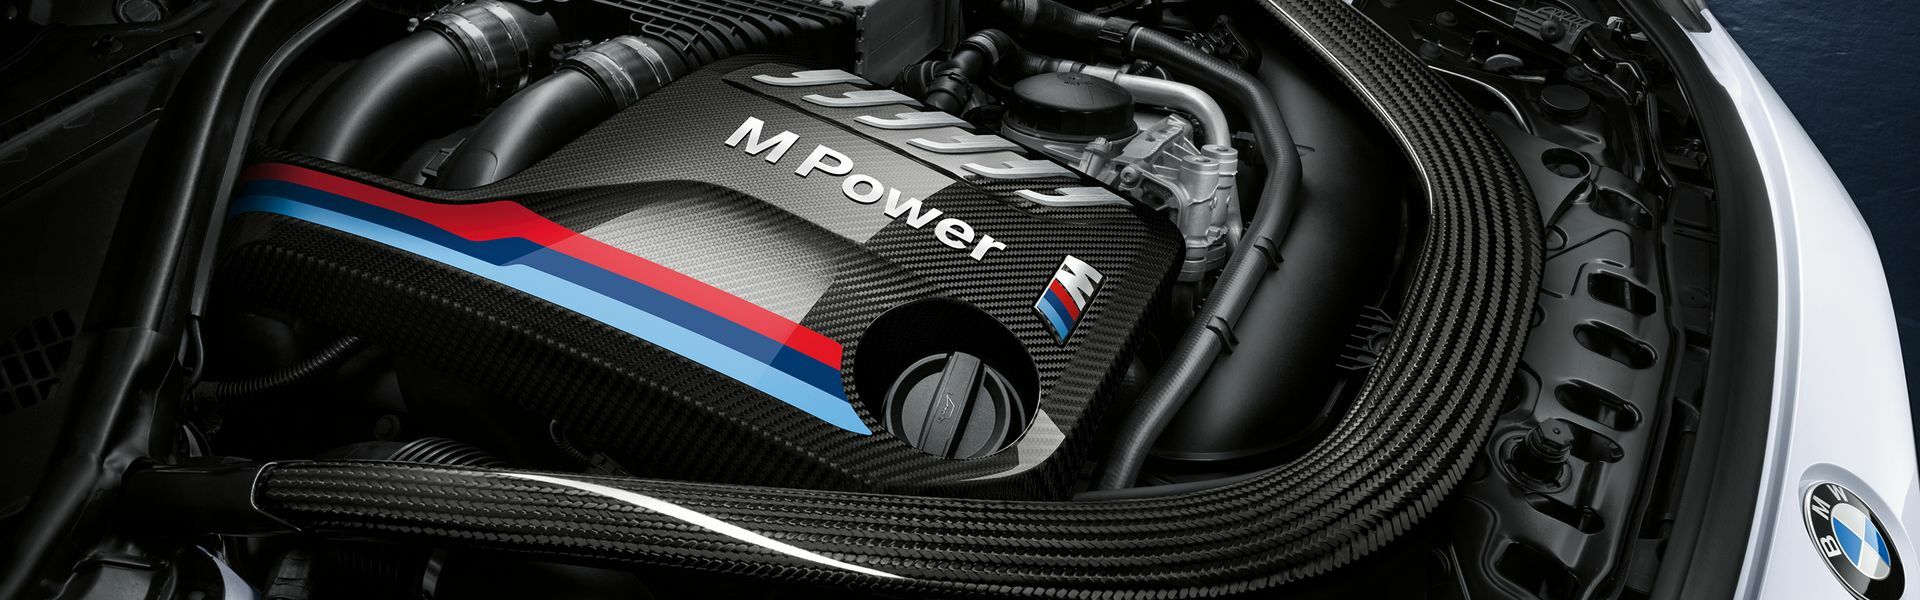 Zvýšení výkonu/ Softwarové úpravy/ Drobné performance díly pro automobil McLaren 570S / 570S SPIDER / 570GT